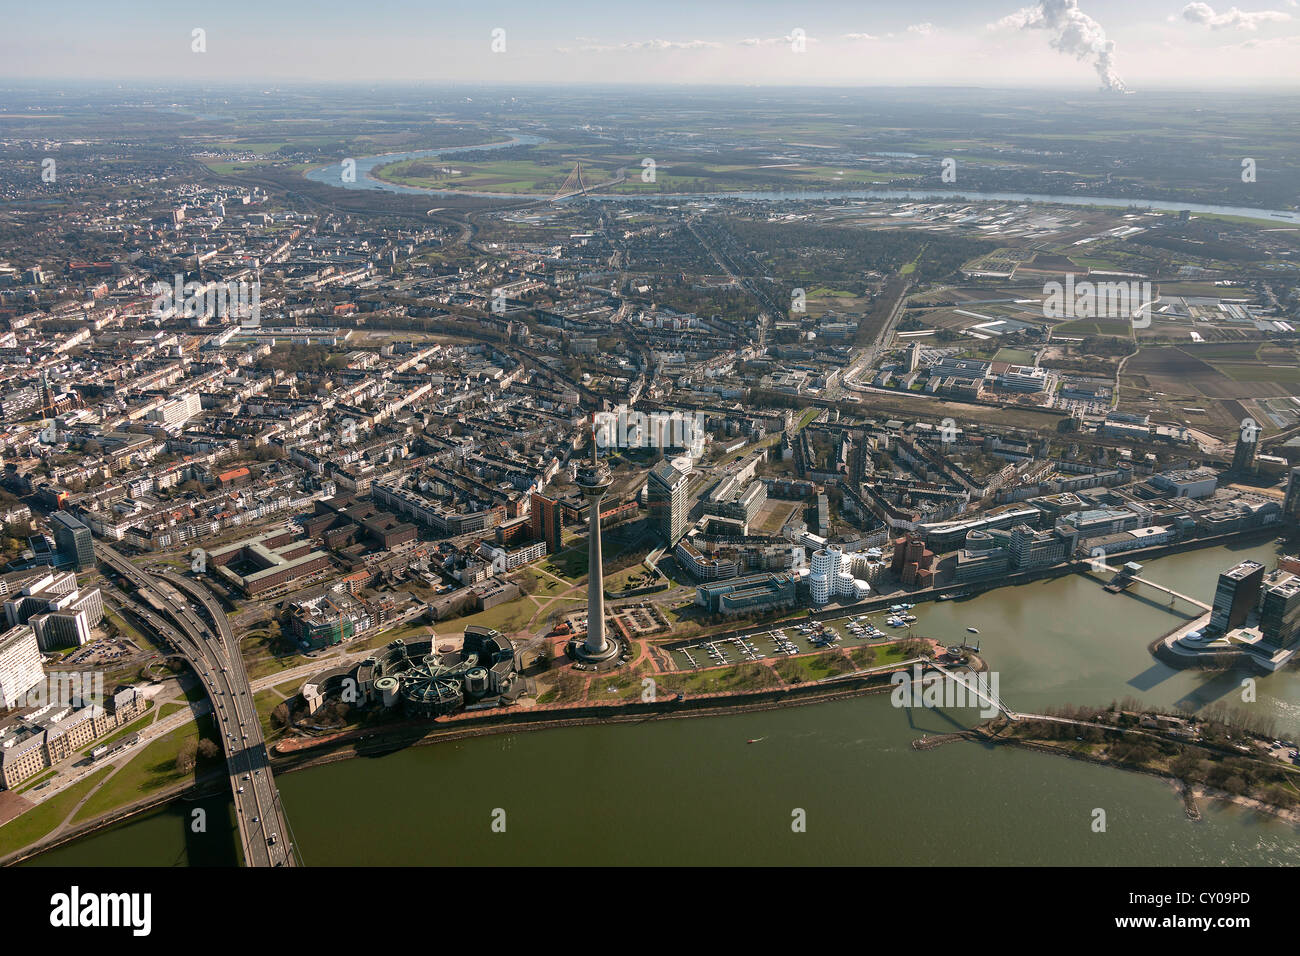 Vista aerea, membro del Parlamento europeo e la torre della televisione, Stadttor torre di uffici, Duesseldorf, regione renana Foto Stock